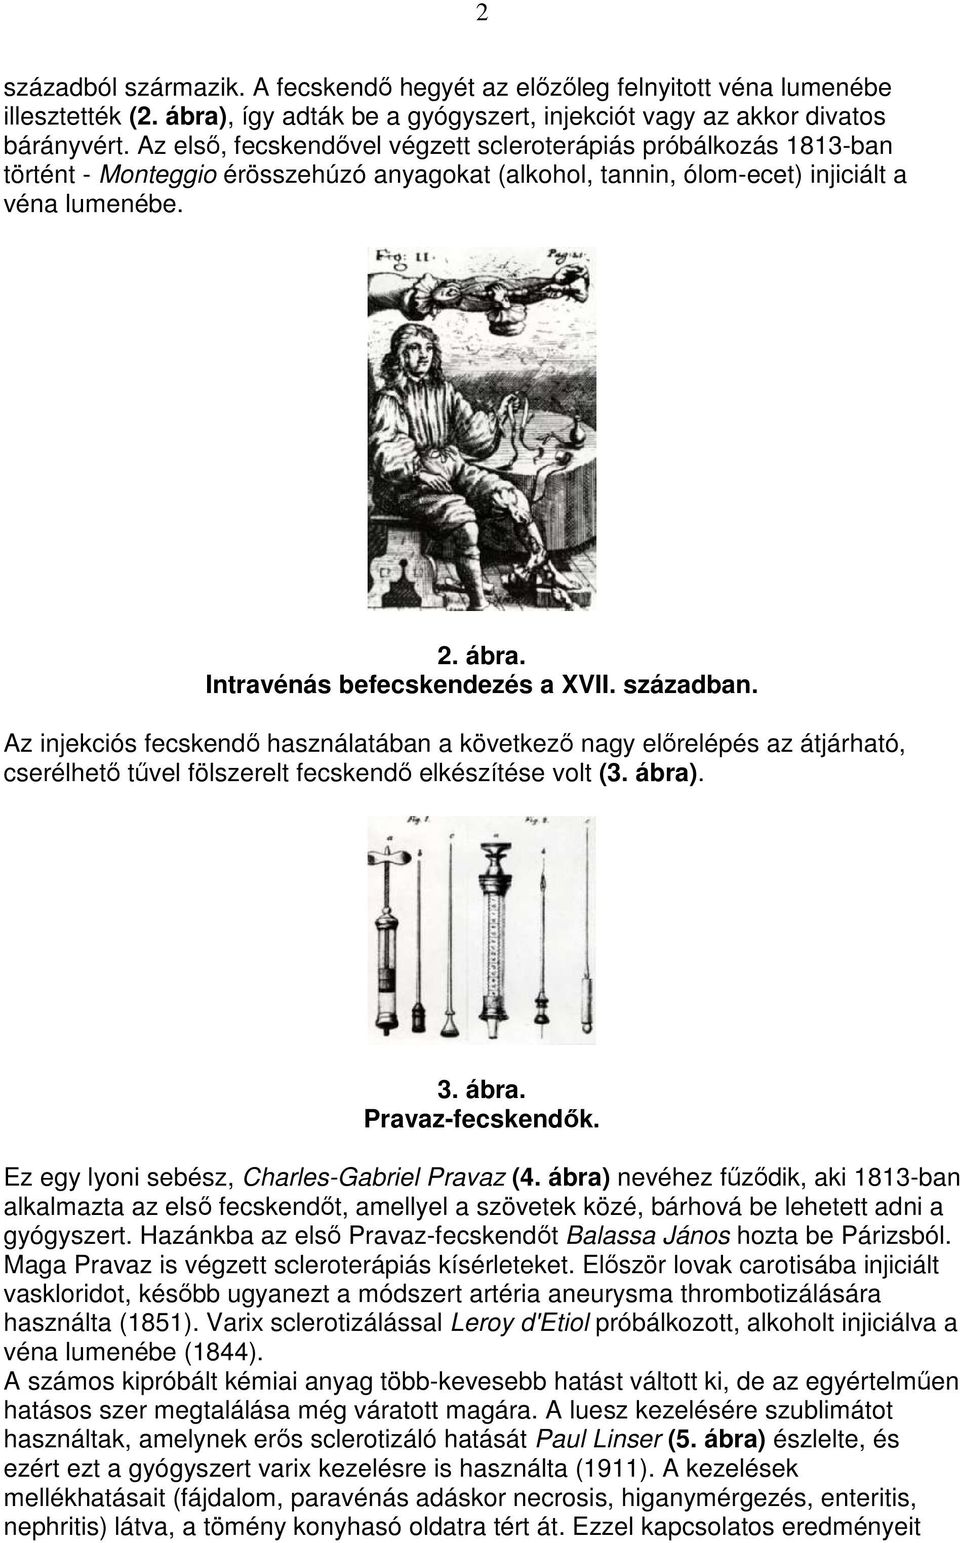 Intravénás befecskendezés a XVII. században. Az injekciós fecskendı használatában a következı nagy elırelépés az átjárható, cserélhetı tővel fölszerelt fecskendı elkészítése volt (3. ábra)